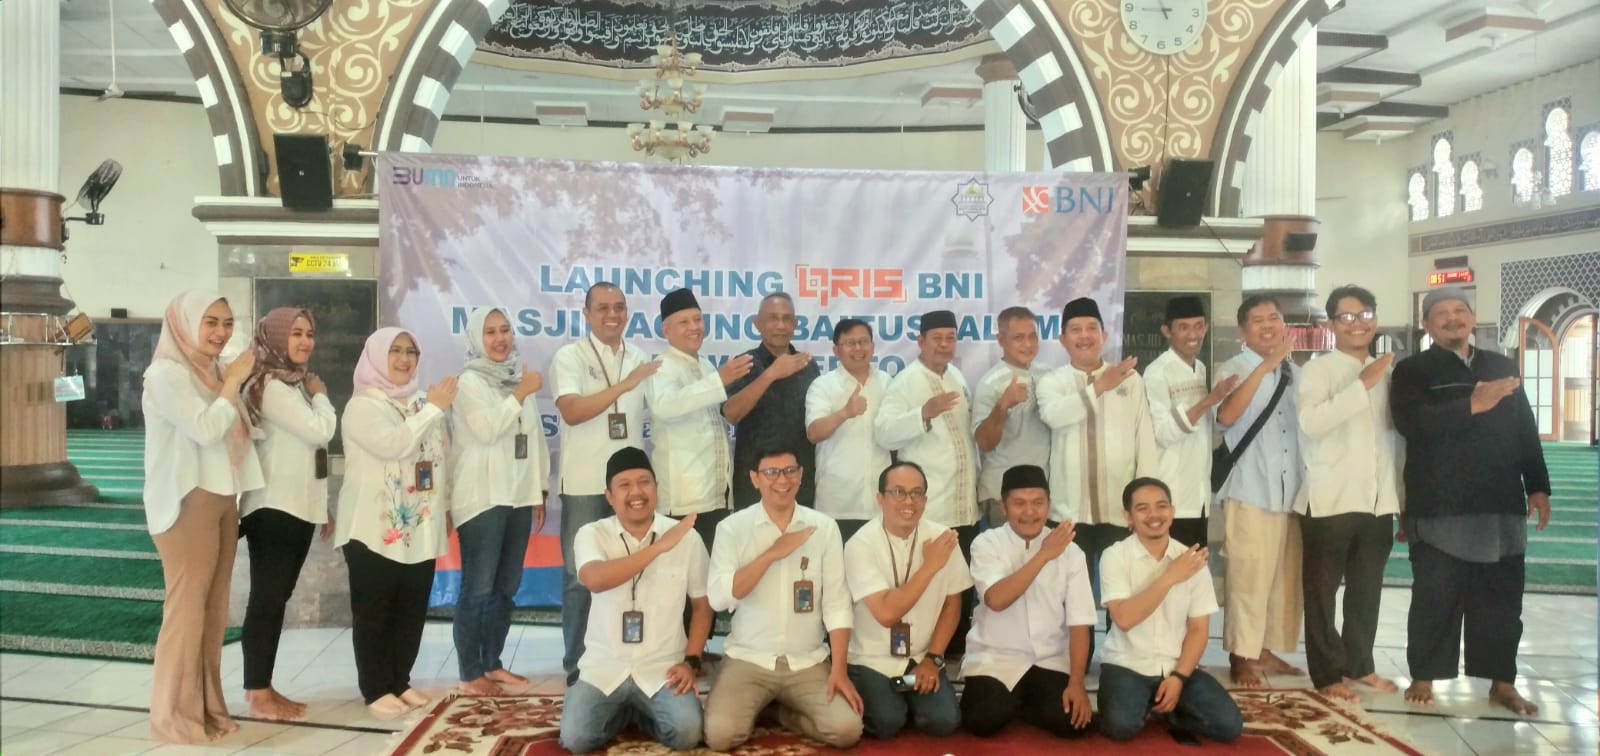 BNI Mudahkan Sedakah Secara Digital, Launching QRIS BNI di Masjid Agung Baitussalam 